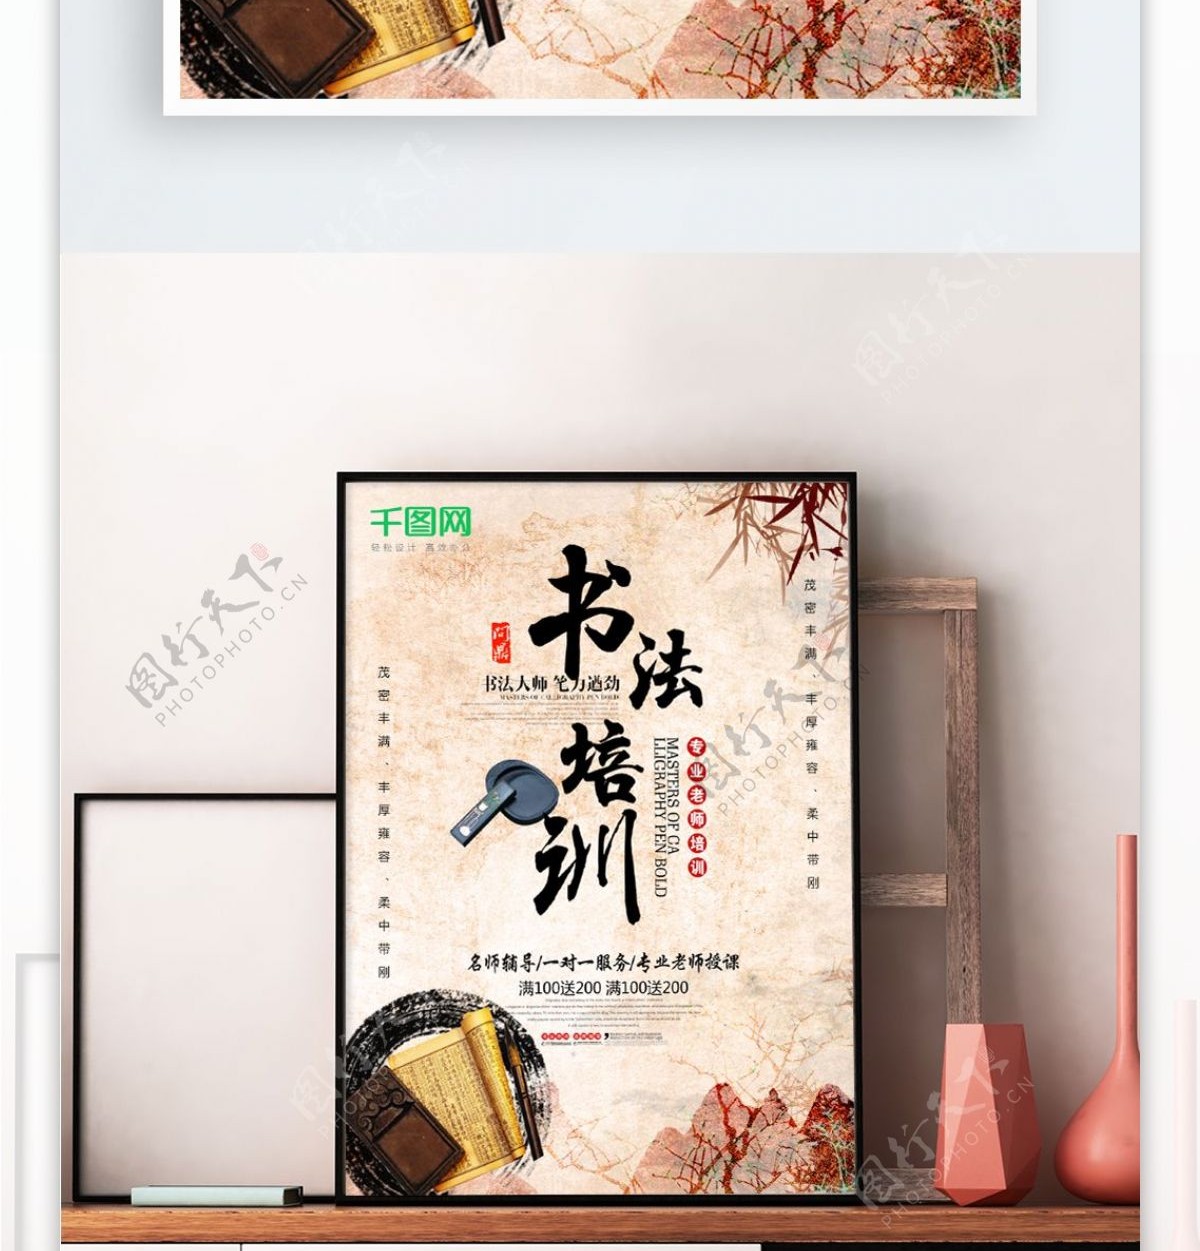 中国风书法培训招生海报水墨纸墨笔砚